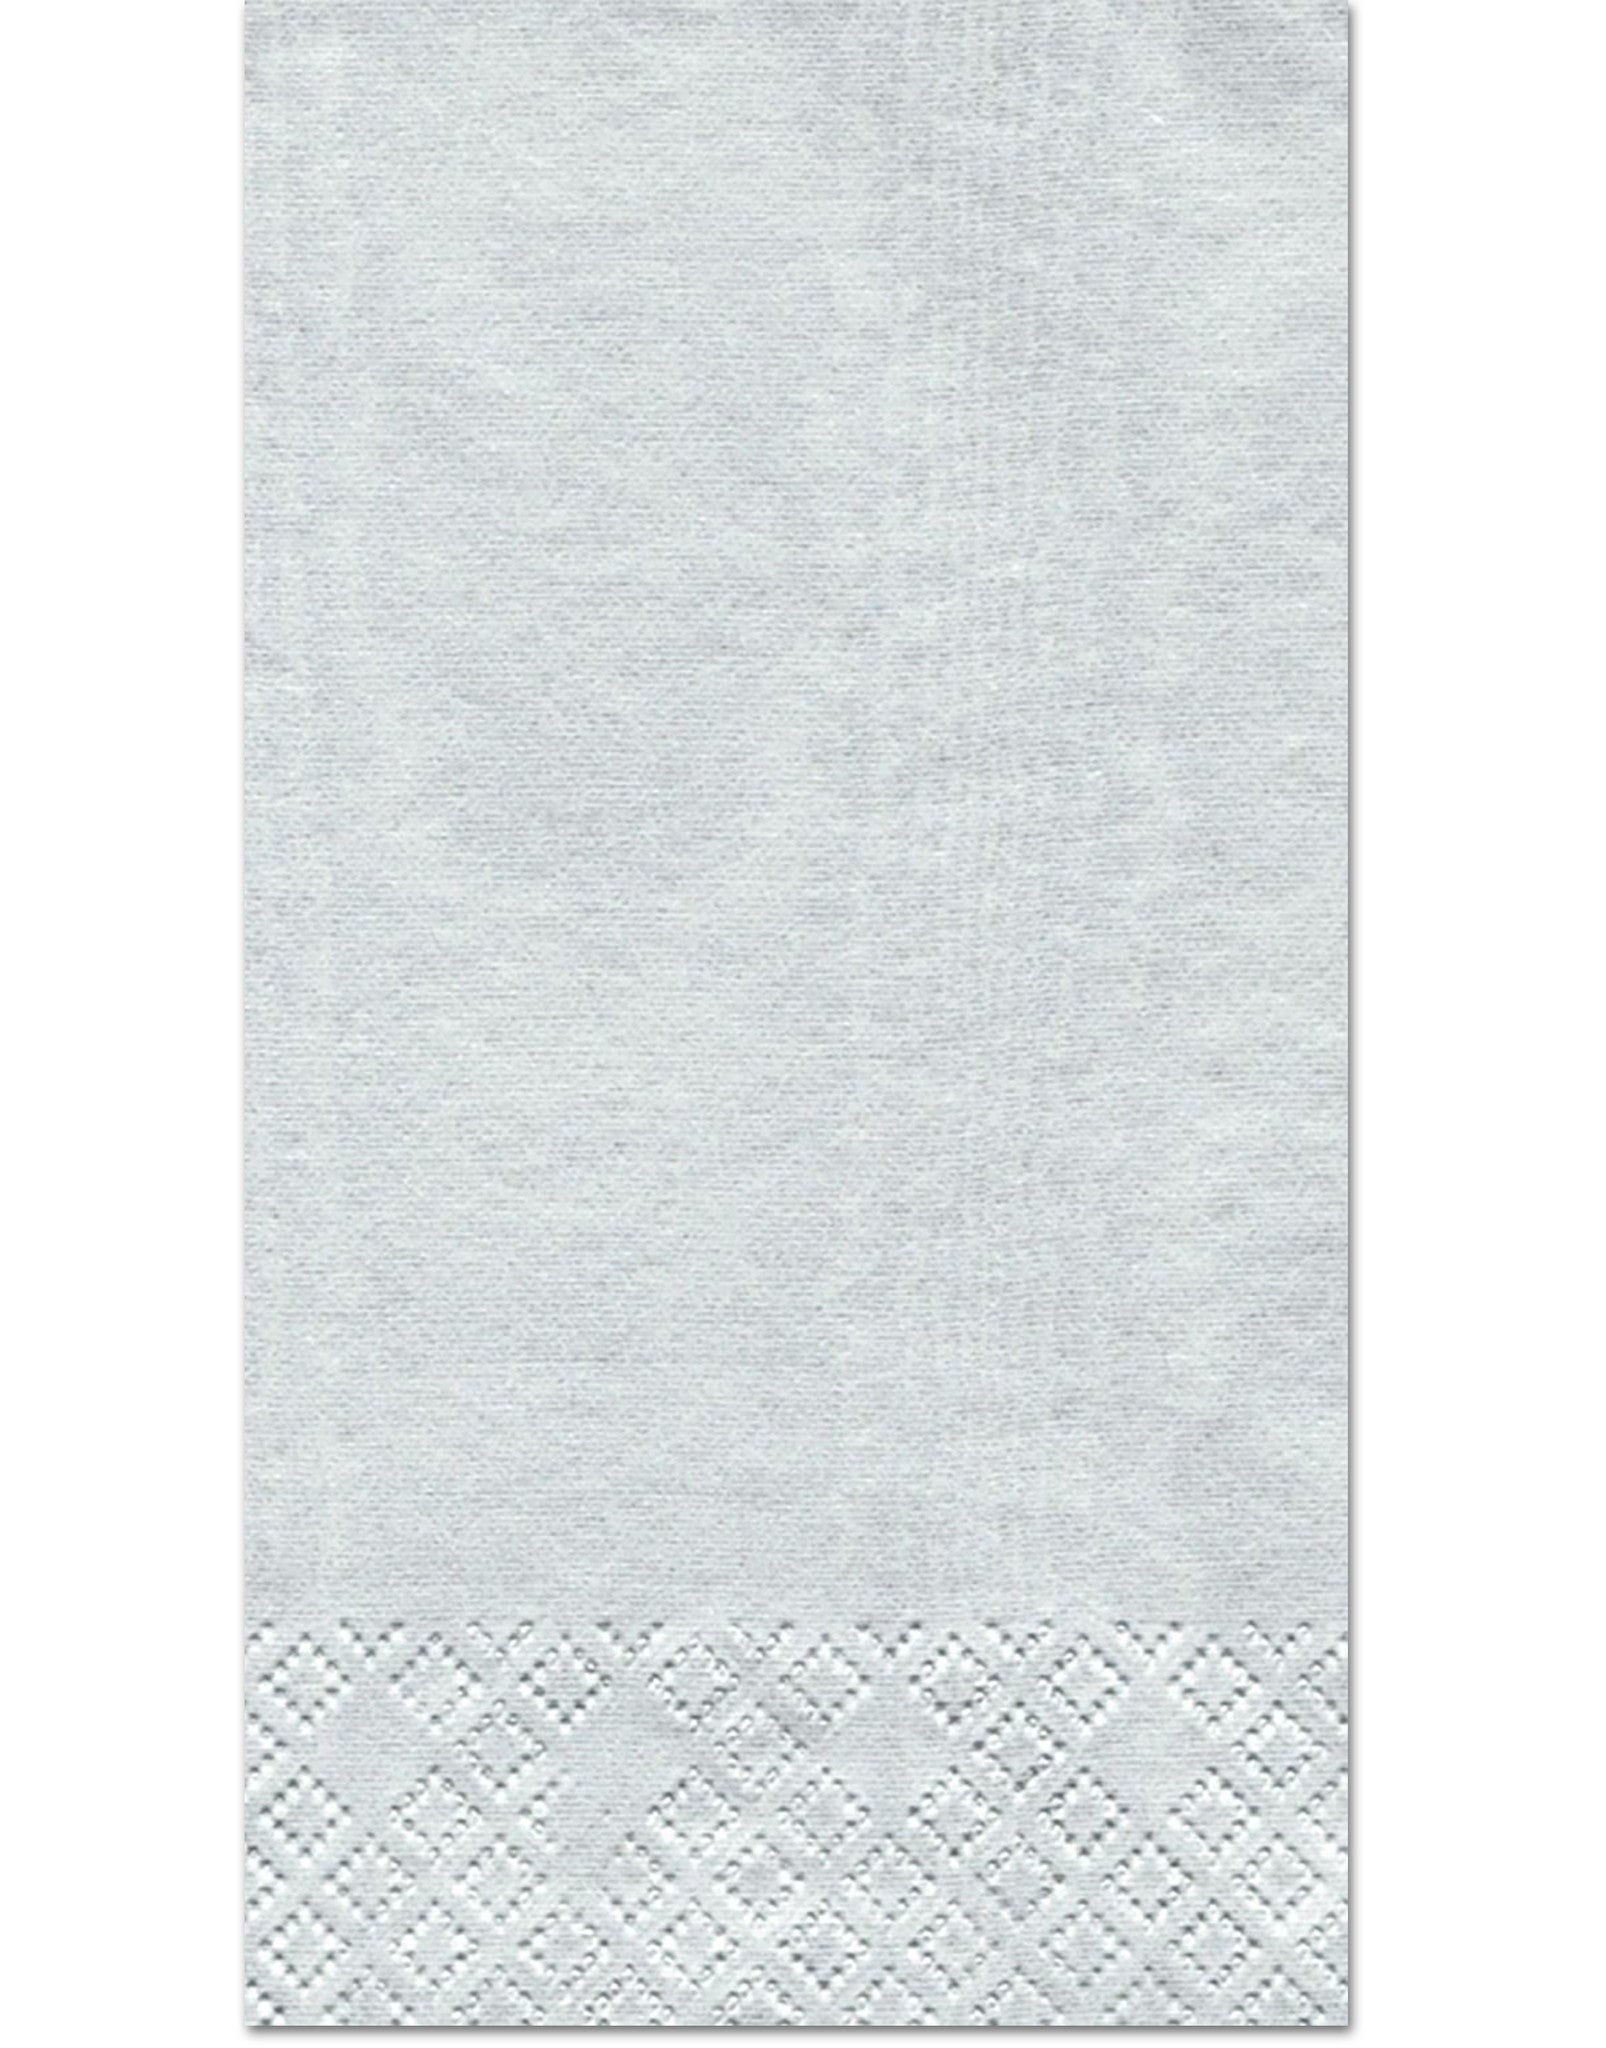 Caspari Moiré Platinum Guest Towels - 15pk